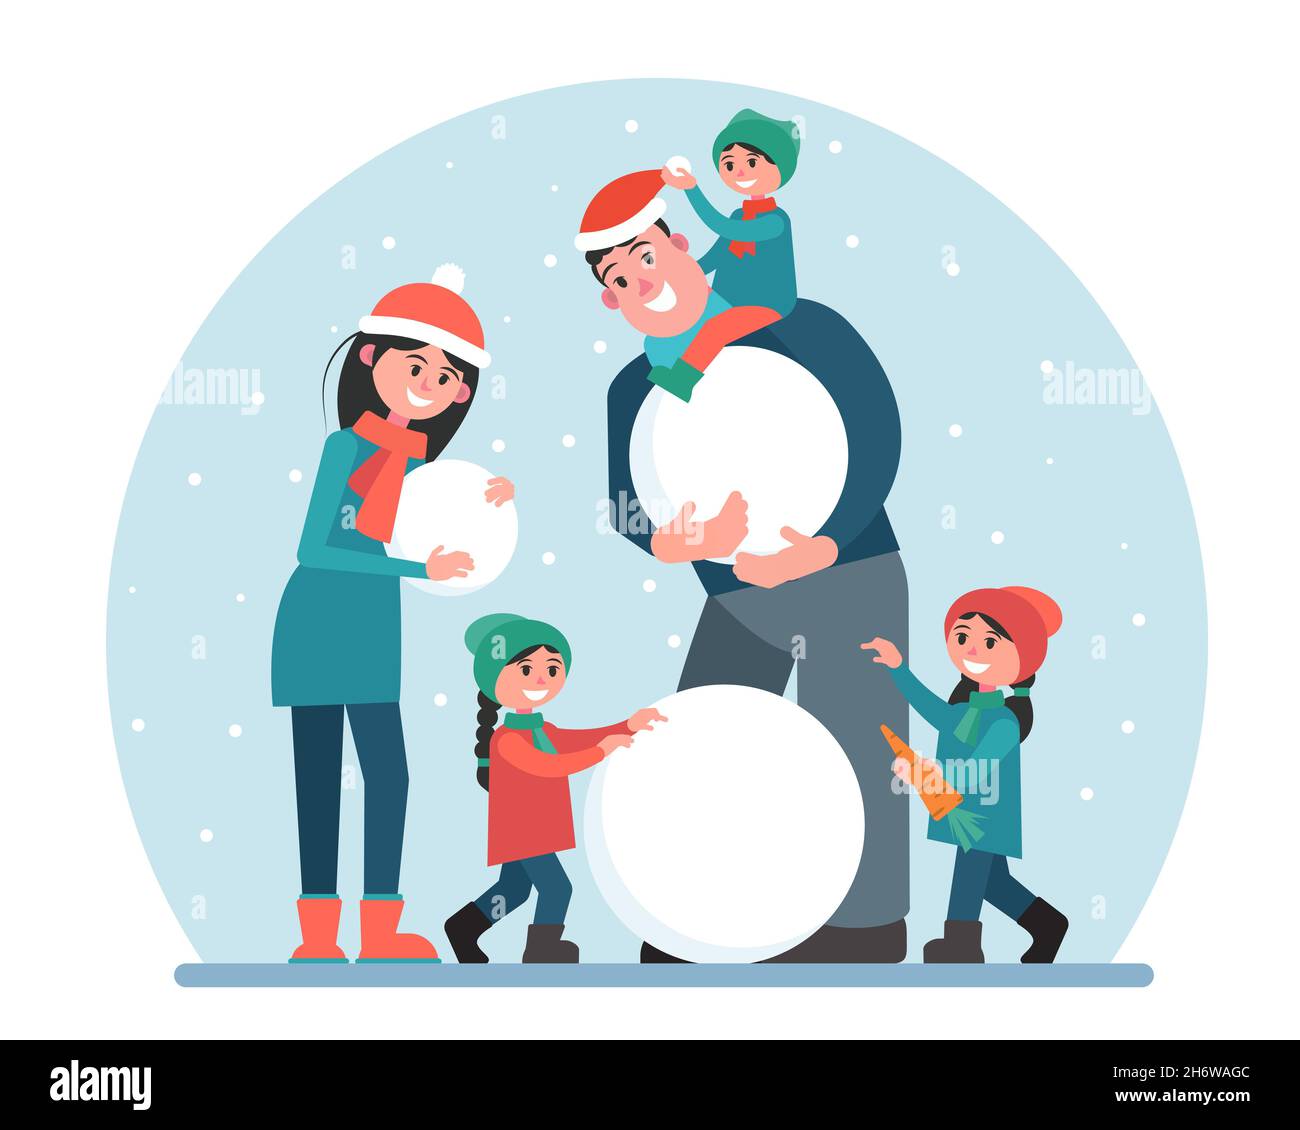 Une famille heureuse fait un bonhomme de neige.Les parents et les enfants se reposent activement dans l'air frais.Traditions de Noël et détente.Illustration vectorielle. Illustration de Vecteur